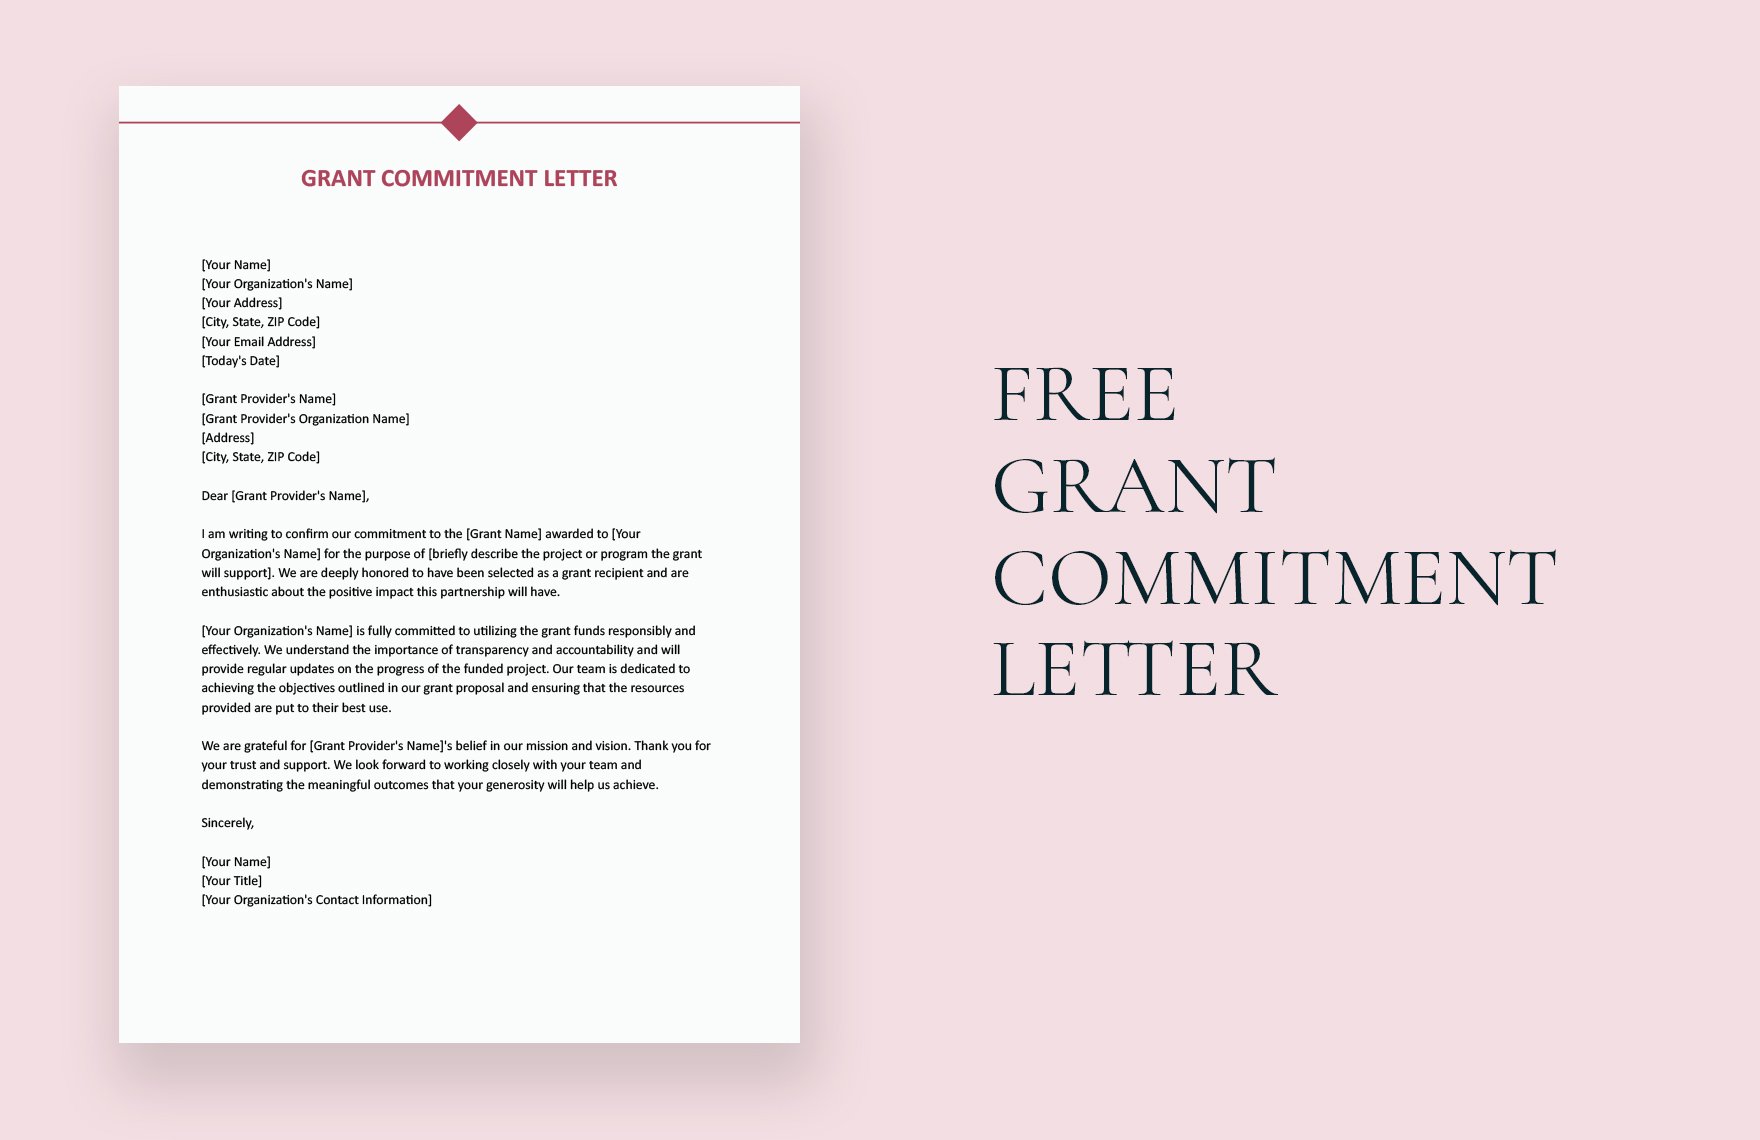 Grant Commitment Letter